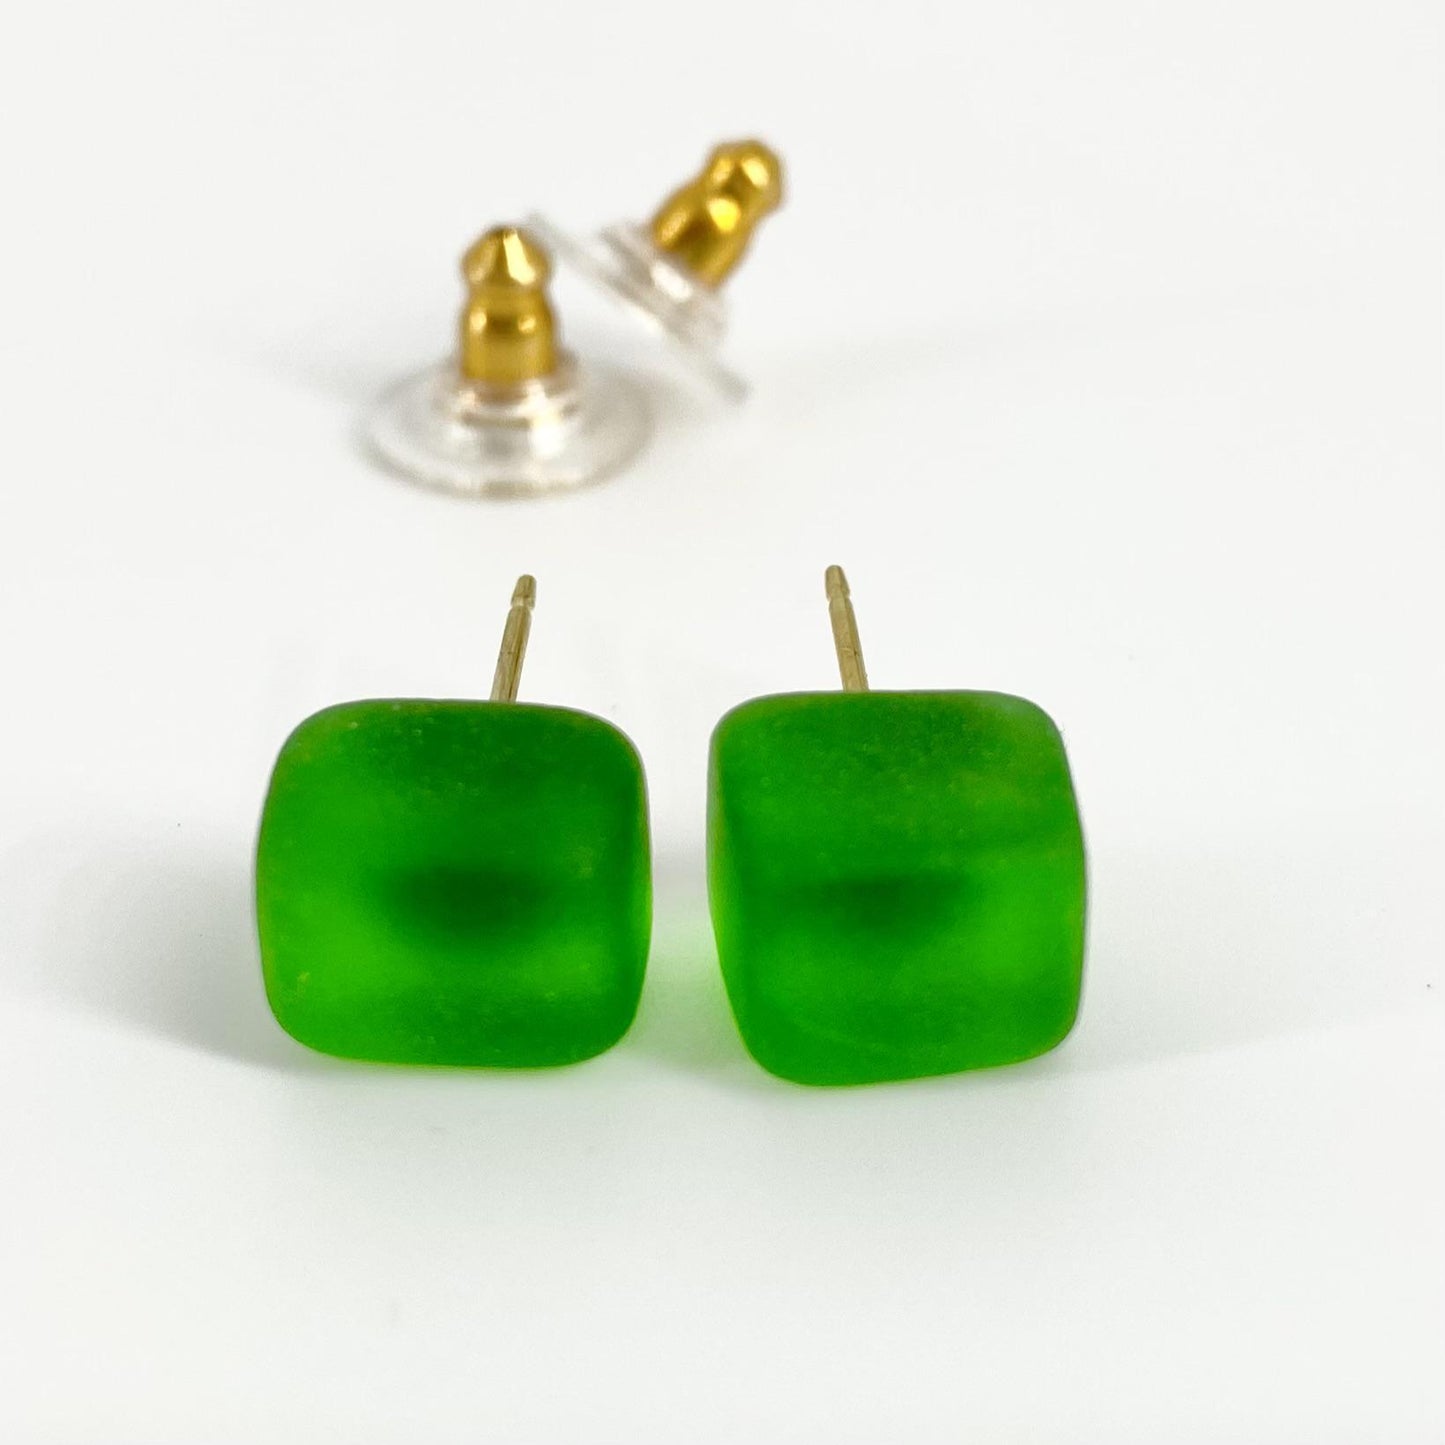 Post Earrings - Goldfill & Reclaimed Glass - Pine